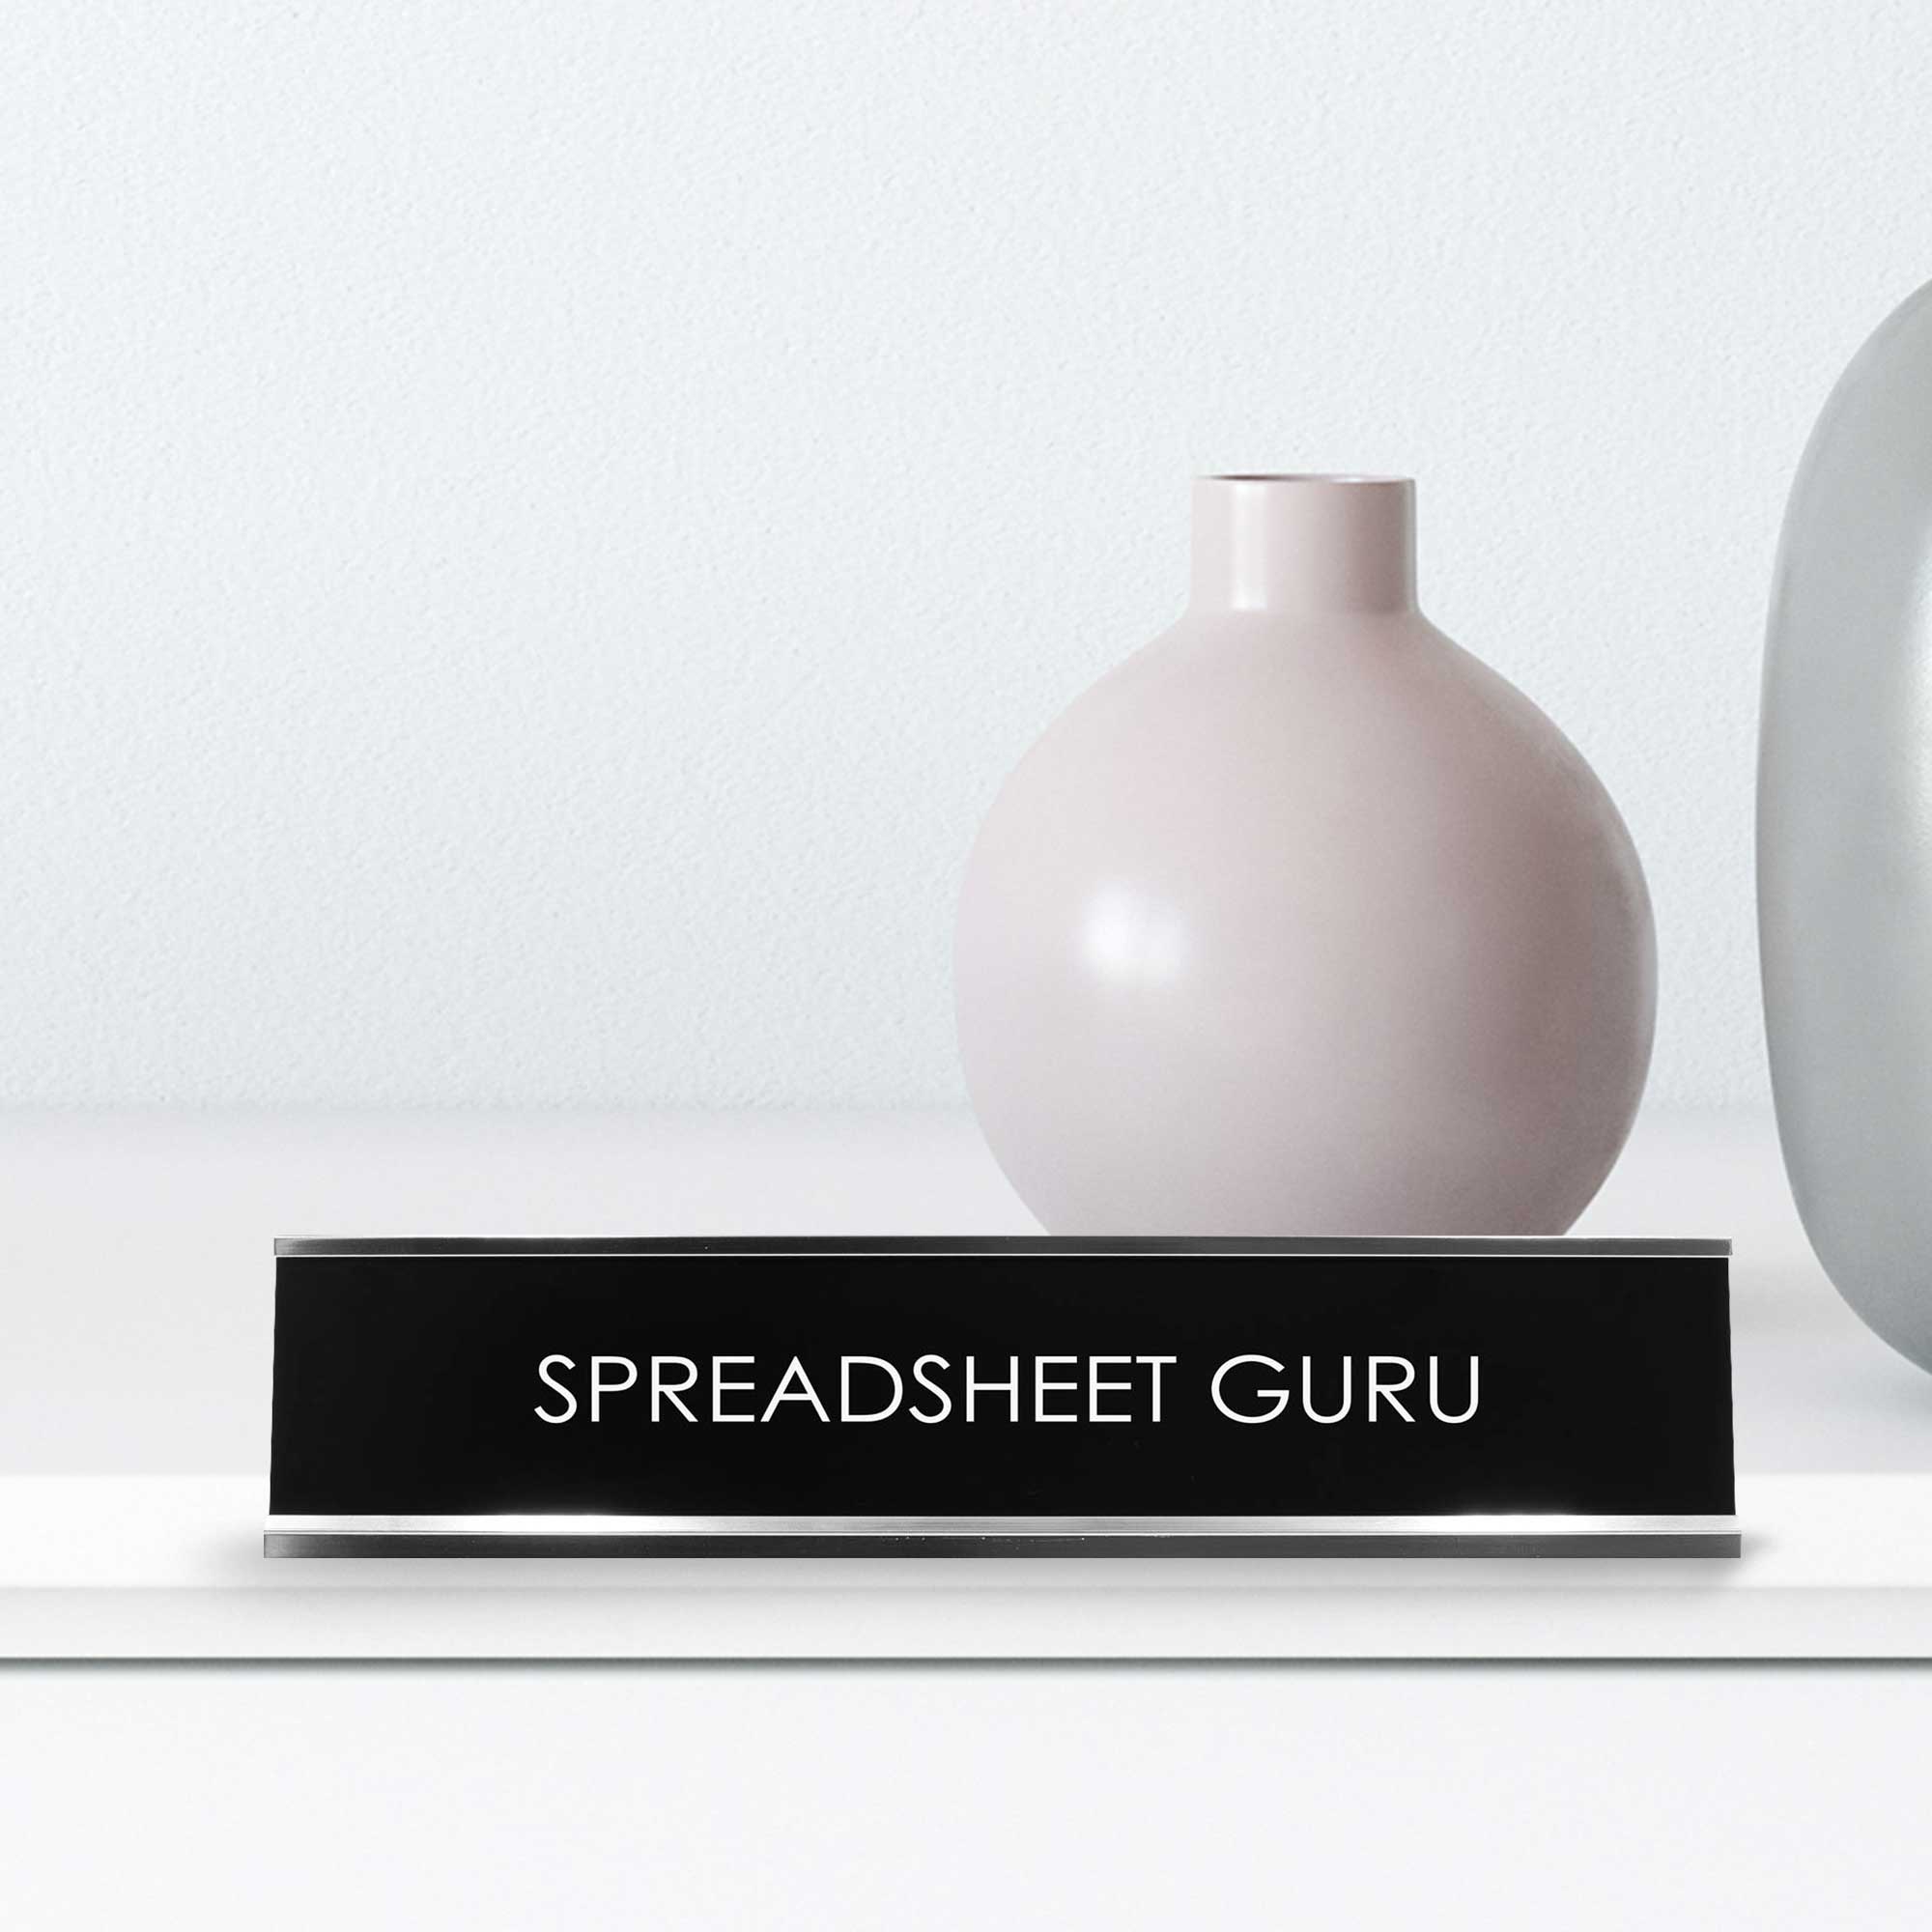 Spreadsheet Guru Novelty Desk Sign